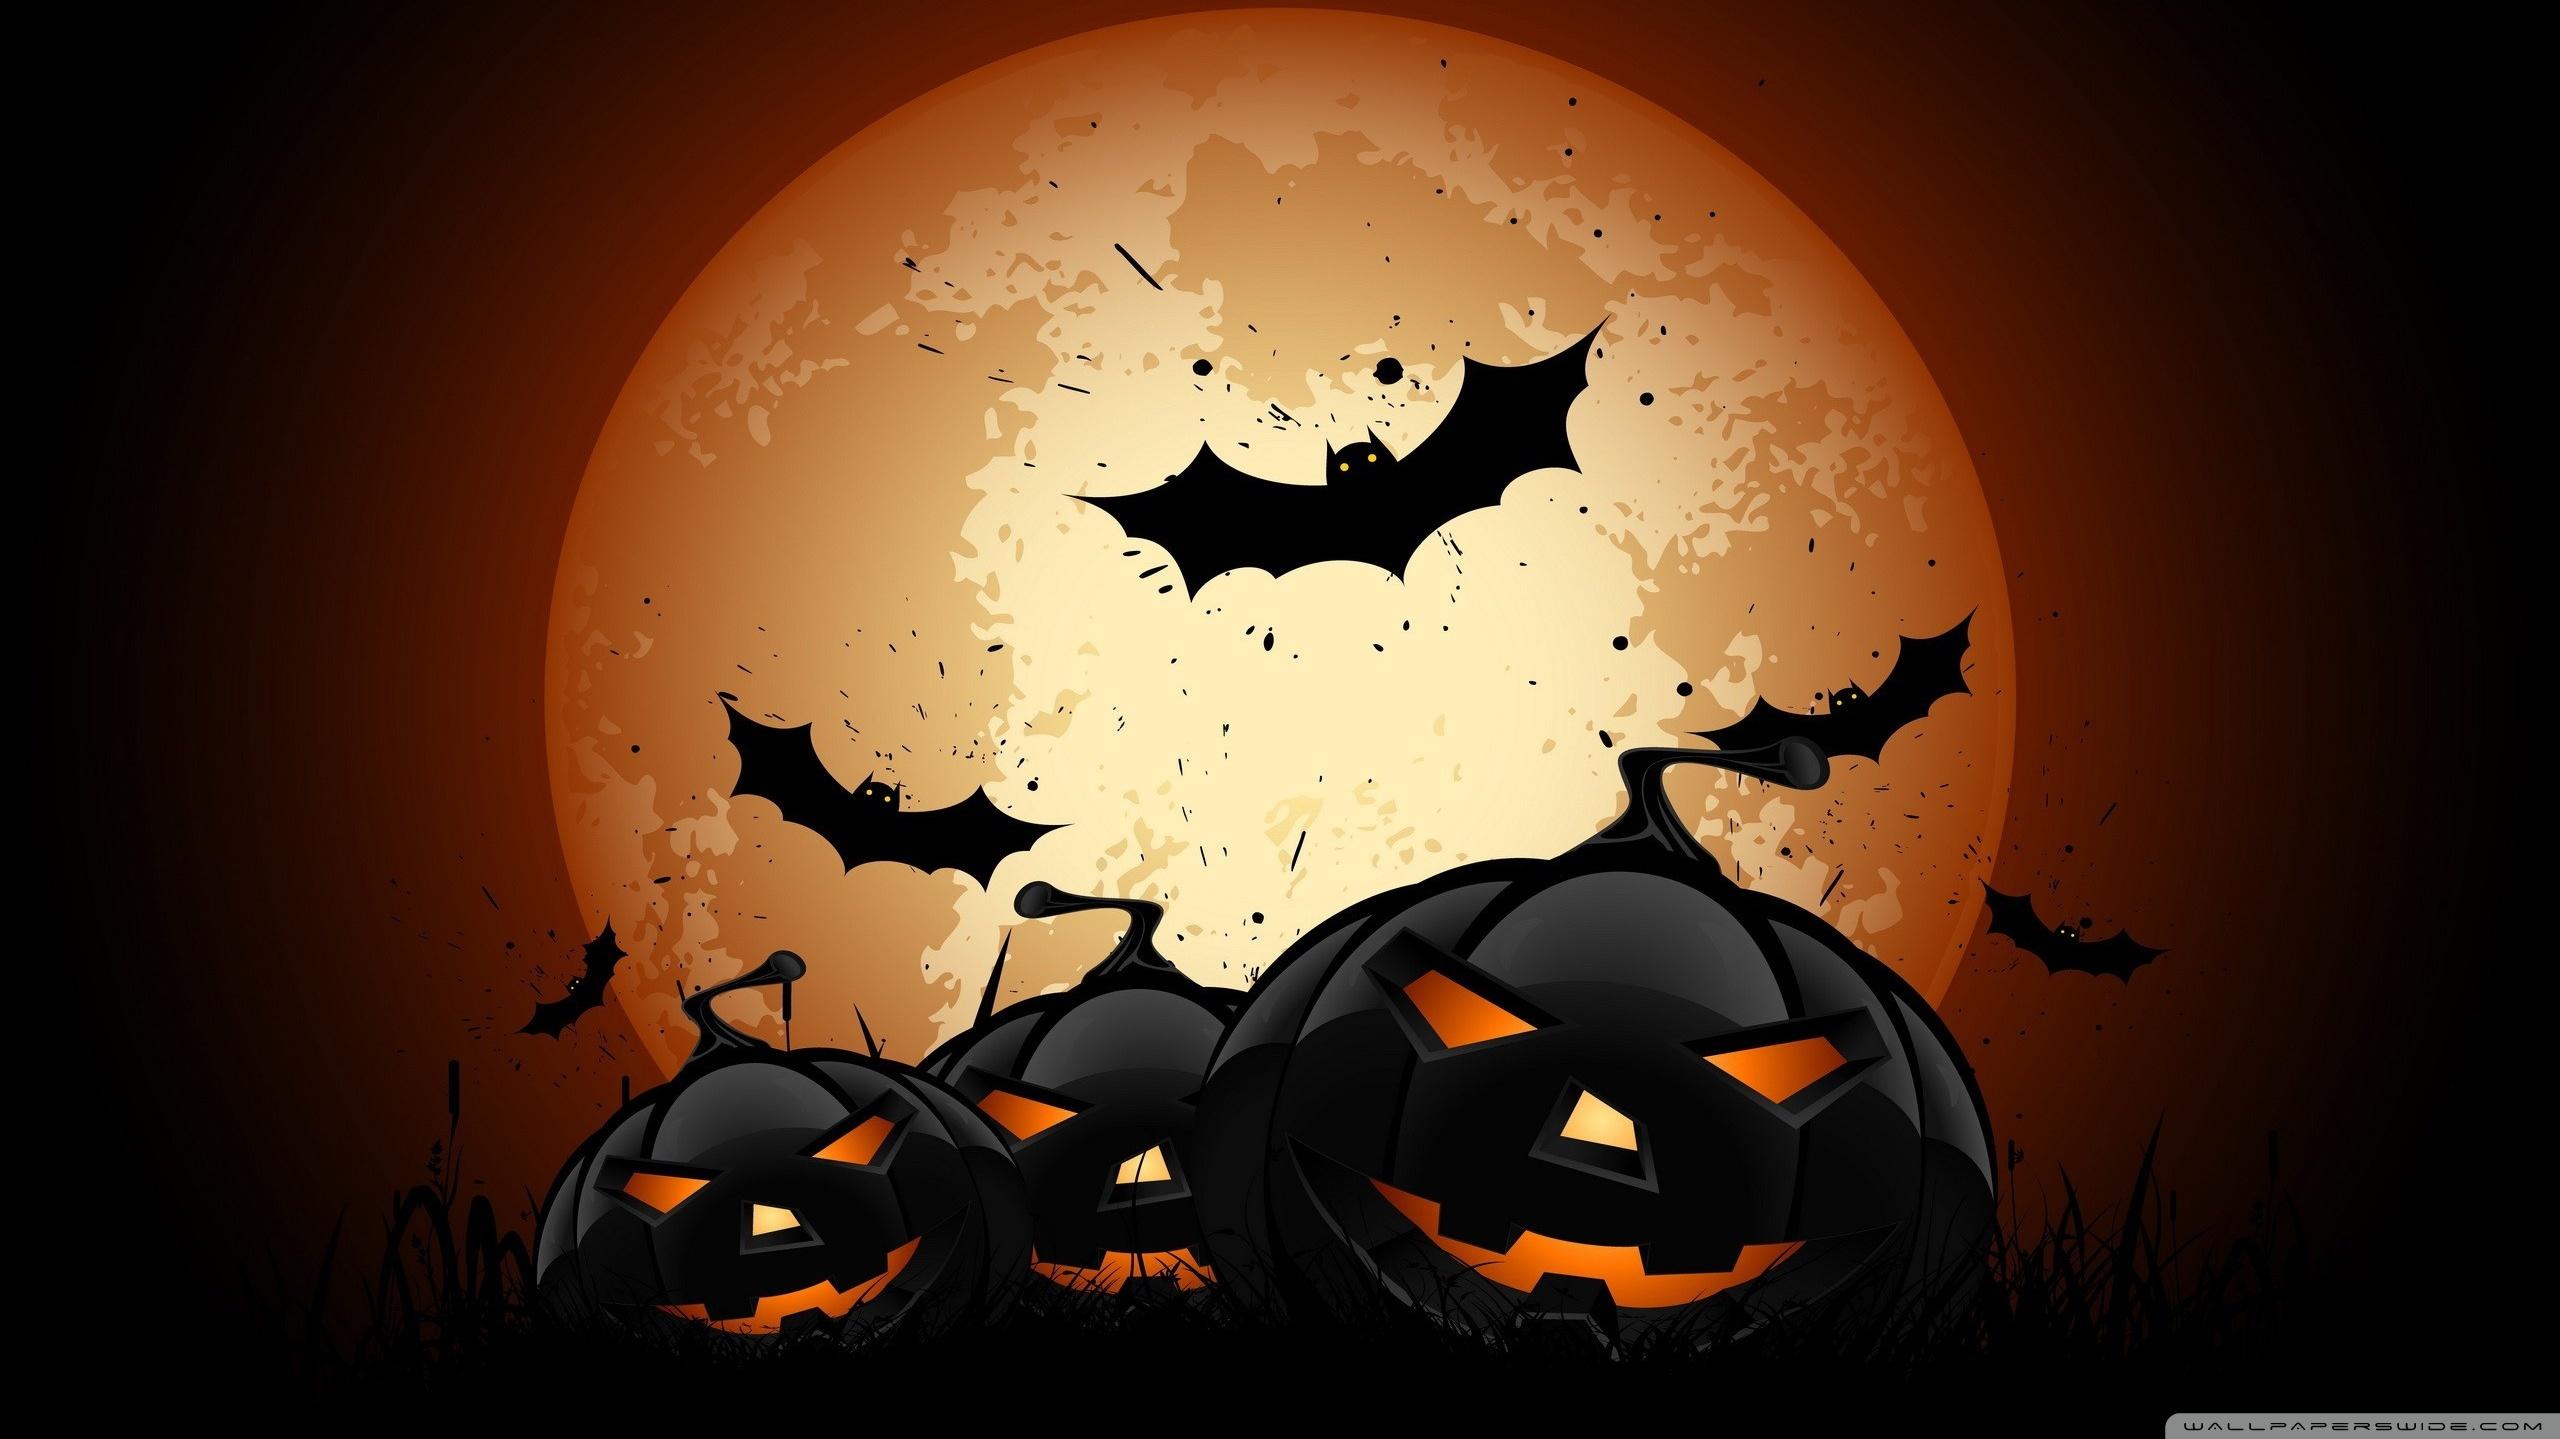 Scary Halloween Pumpkins Ultra HD Desktop Background Wallpaper For